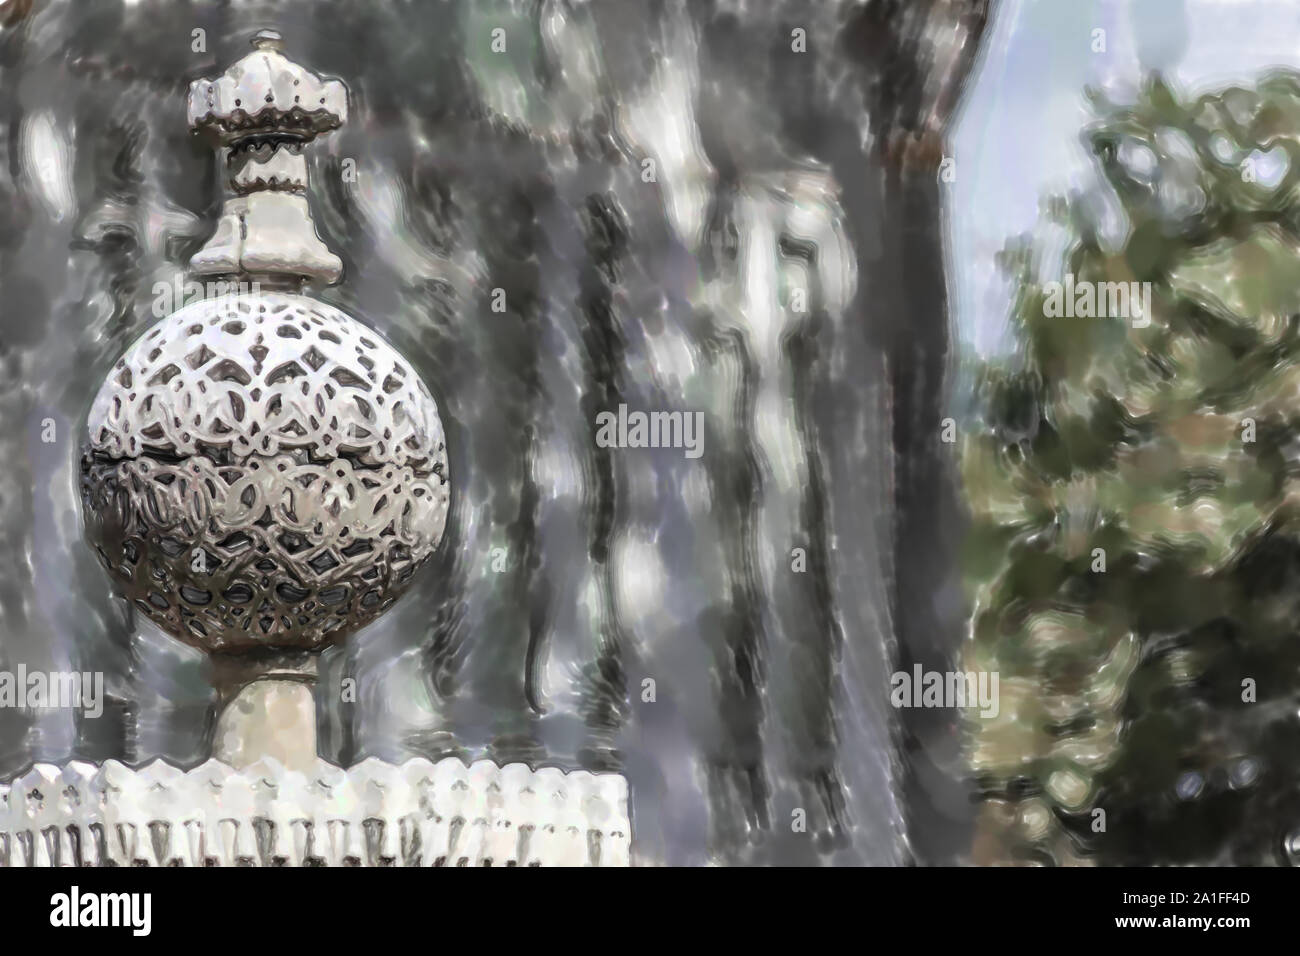 Acquerello immagine: Cisiliated sfera in pietra con belle incisioni in corrispondenza della punta di una recinzione. Foto Stock